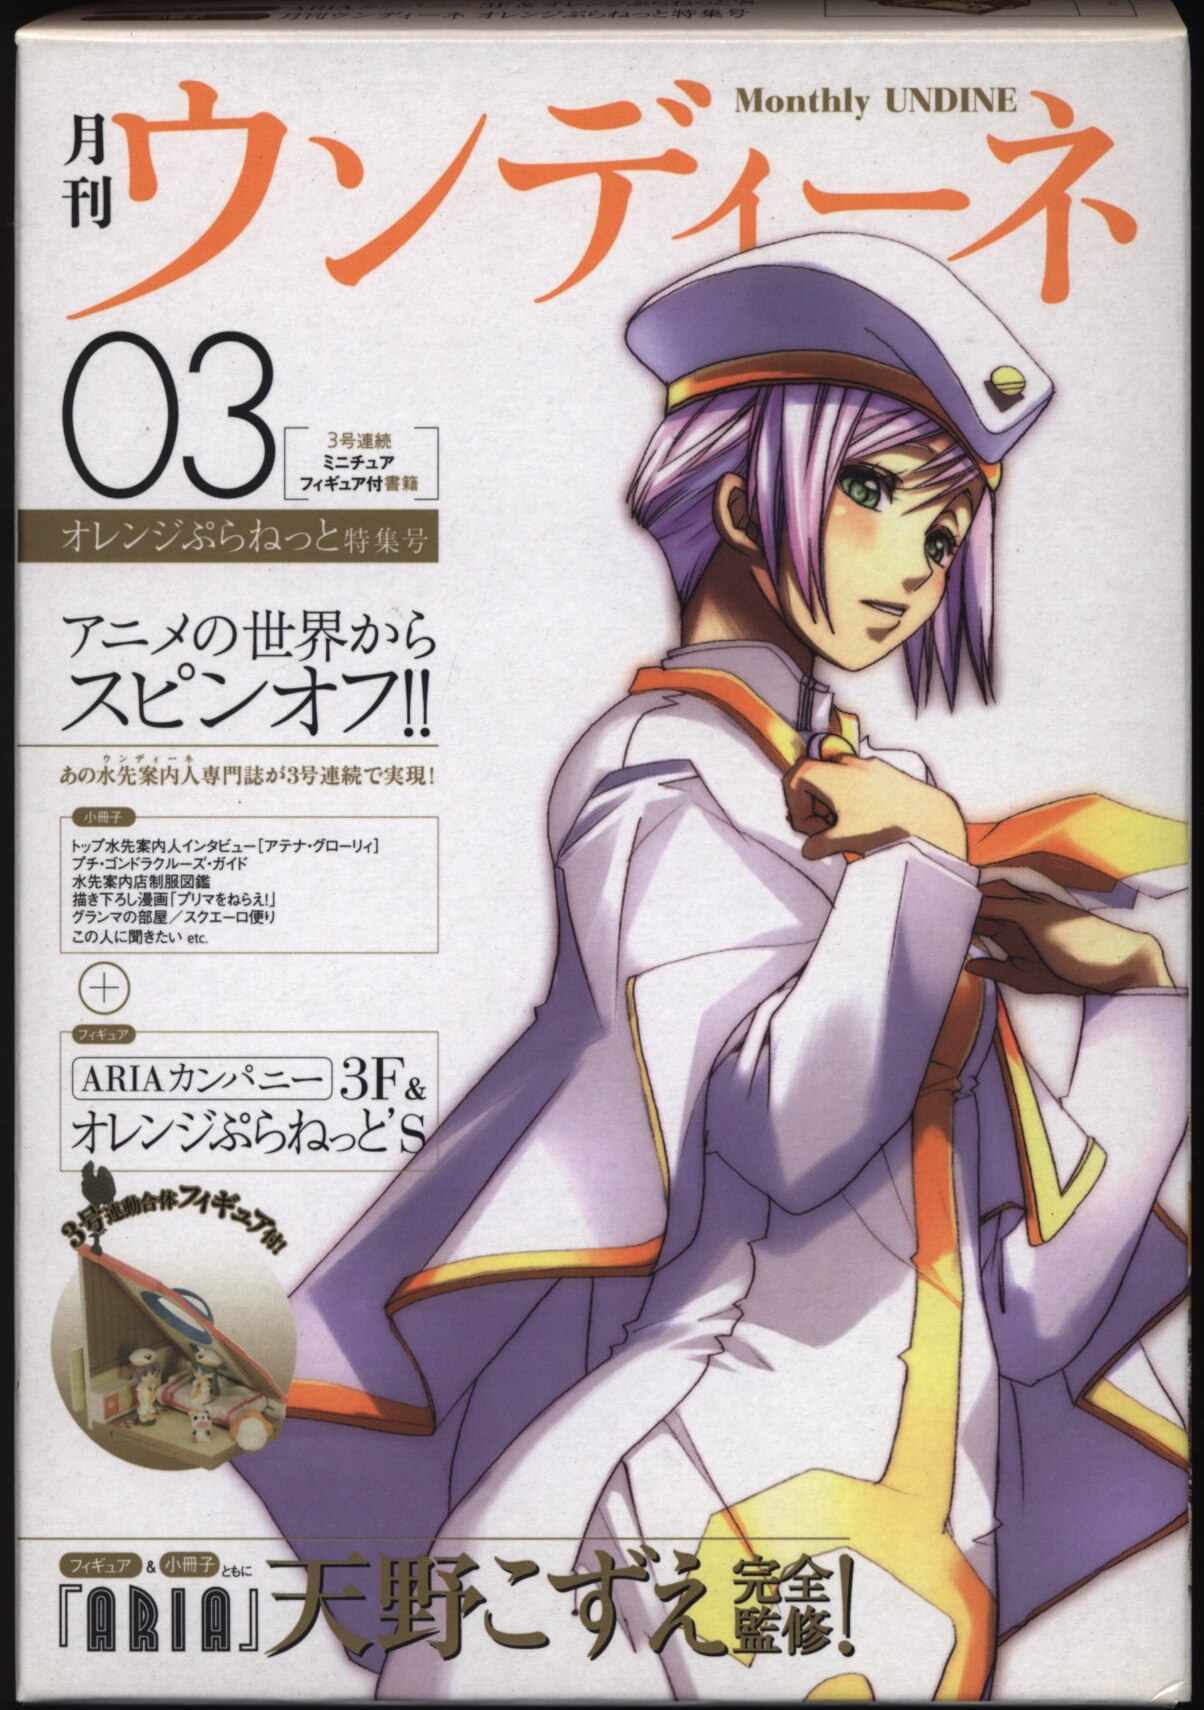 Mag Garden Kozue Amano Aria No Monthly Undine 03 Orange Planet Special Issue No Mandarake Online Shop